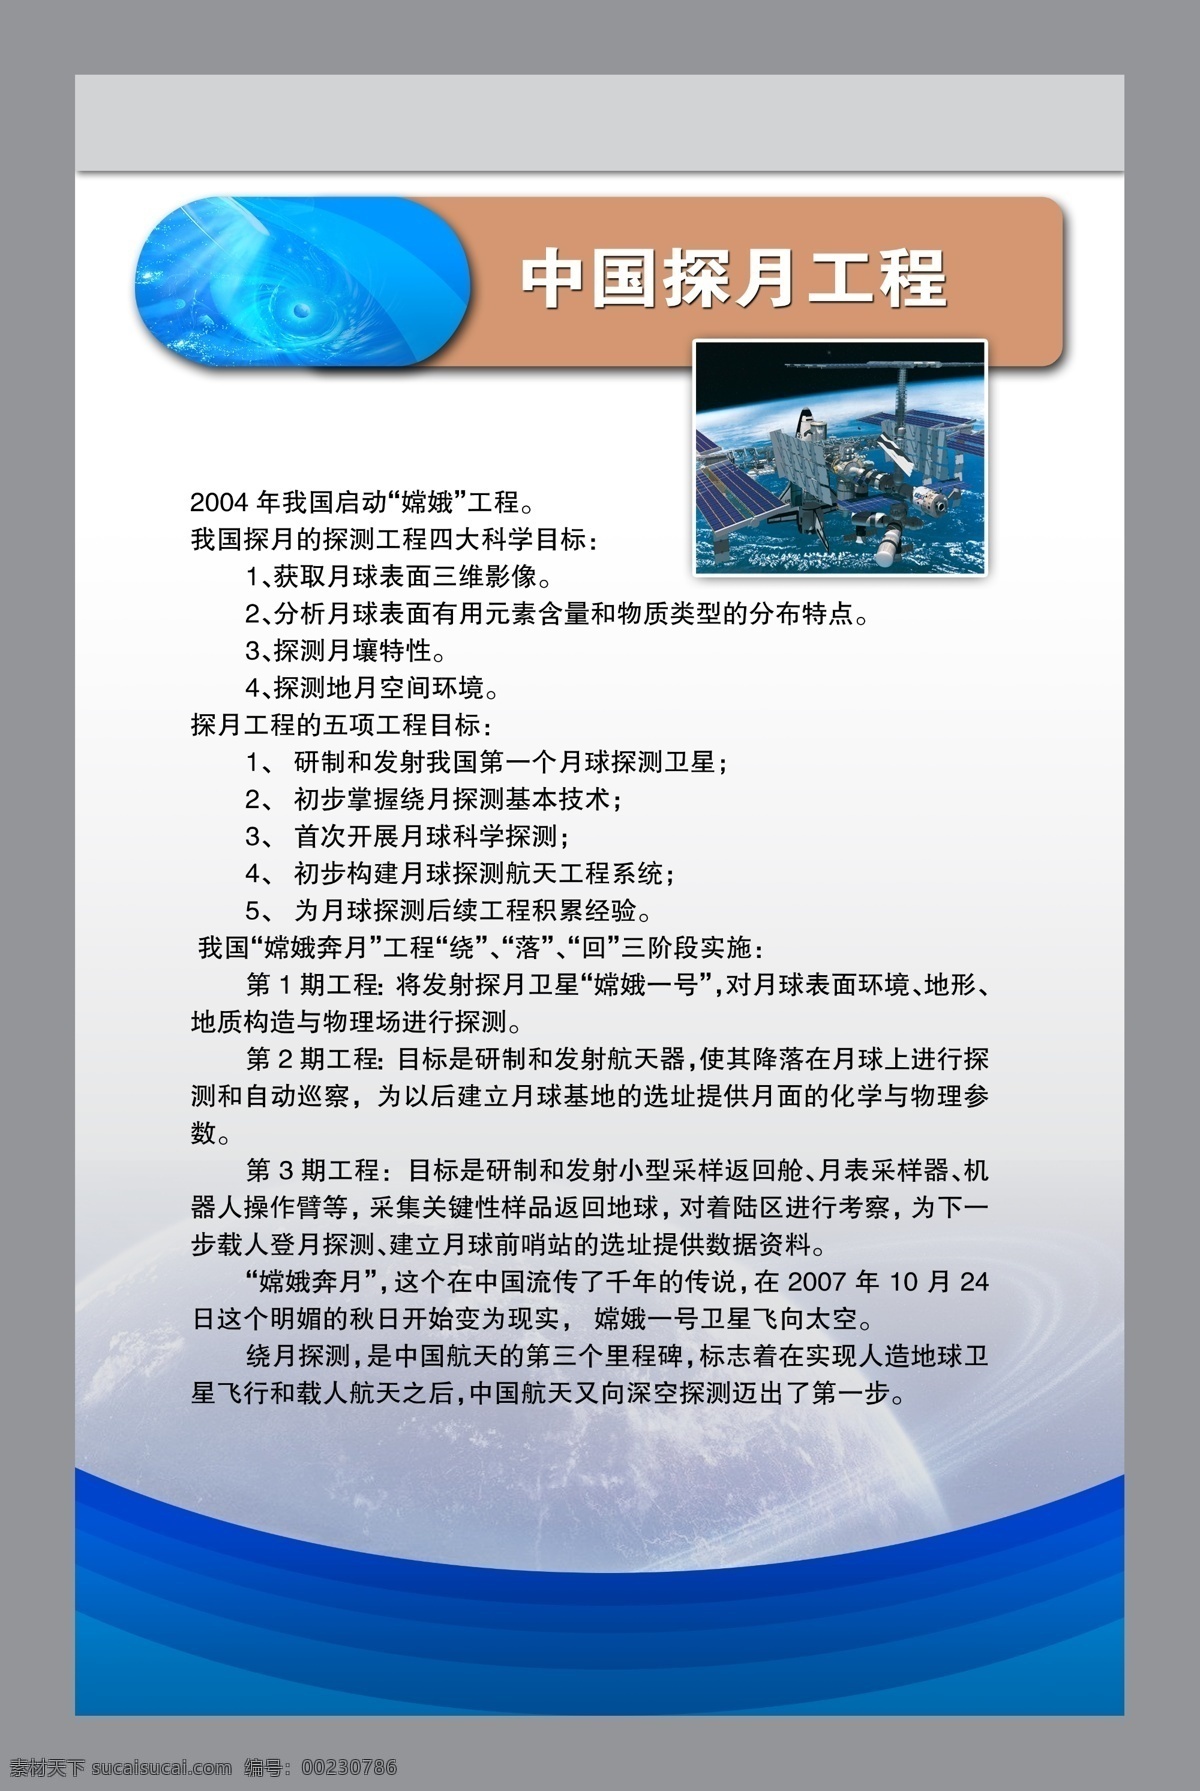 中国探月工程 分层素材 psd格式 设计素材 行政机关 墙报板报 psd源文件 白色